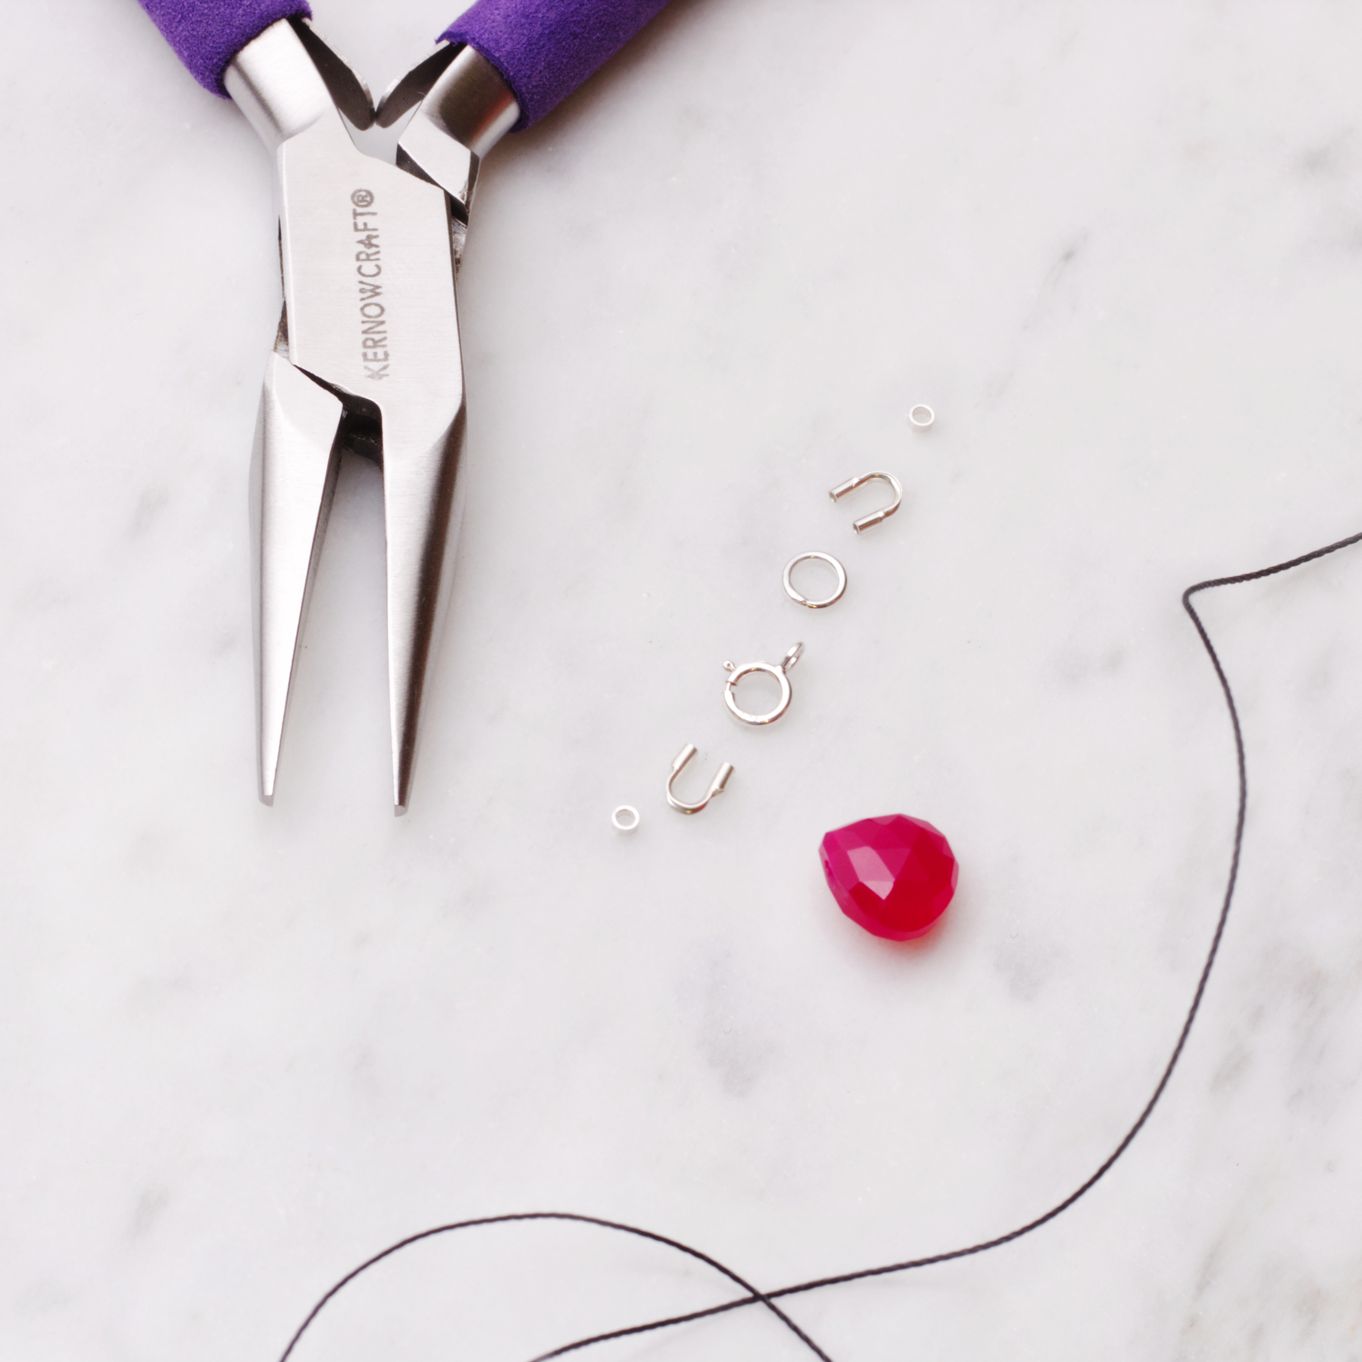 DIY Mini Tassels & Jewellery Projects